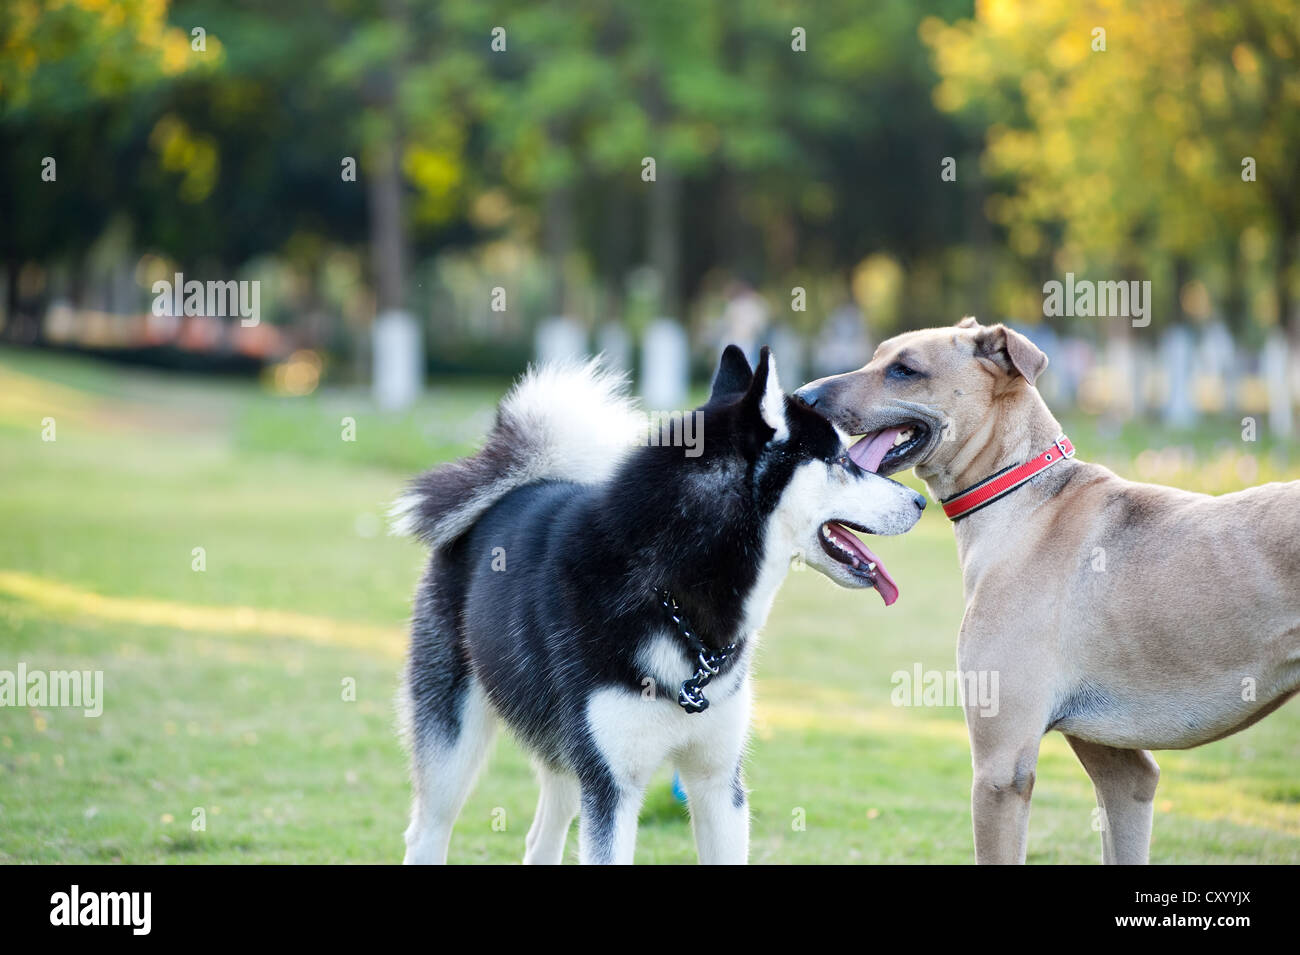 Встречаются две собаки. Две собаки и Сакура. Dog at Dog Park. Двое собак как правильно.